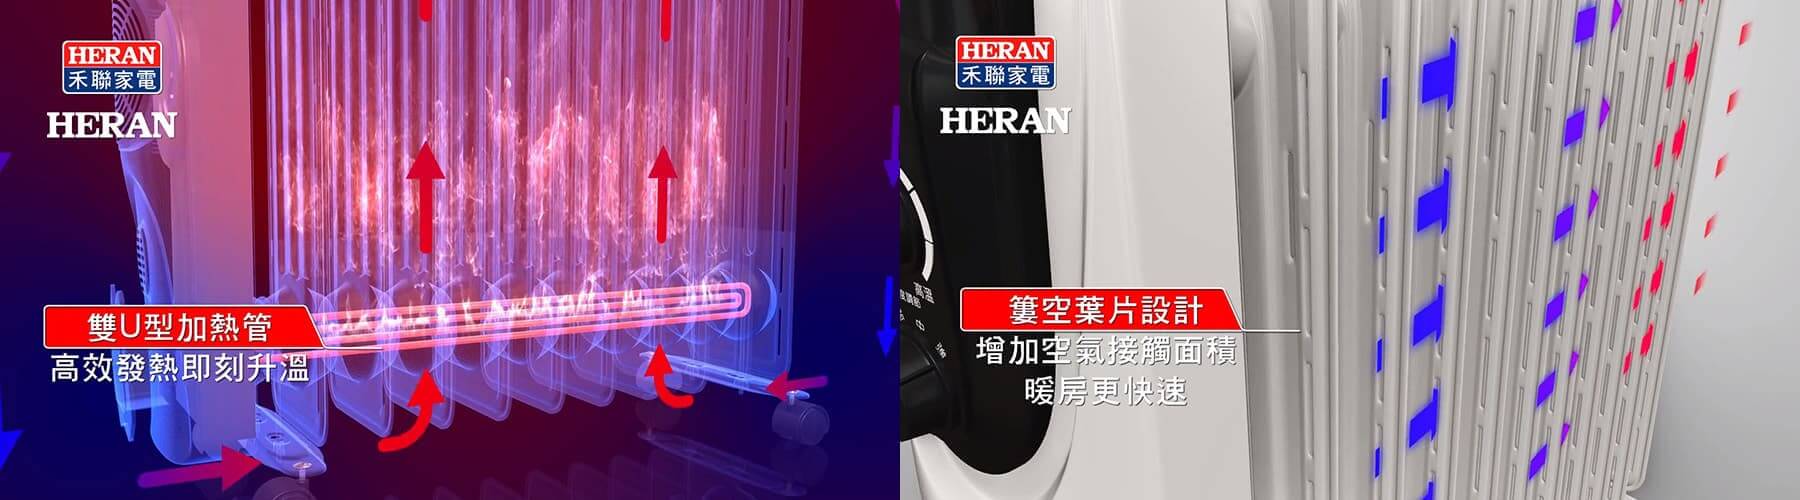 HERAN禾聯葉片式電暖器3D動畫影片-1